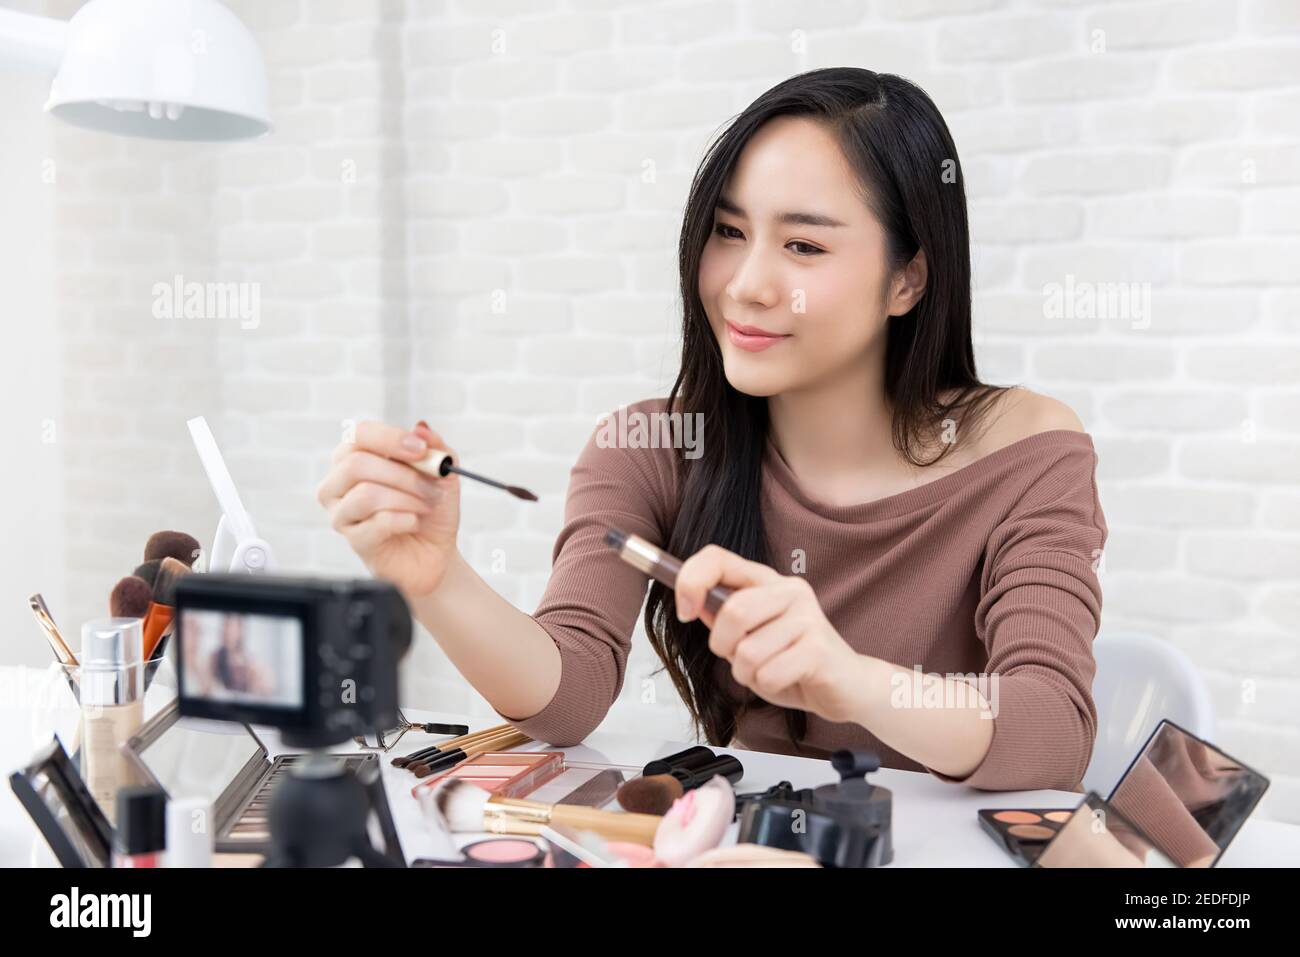 Belle femme asiatique professionnel de beauté enregistreur de vlogger maquillage cosmétique tutoriel vidéo à partager sur les réseaux sociaux Banque D'Images